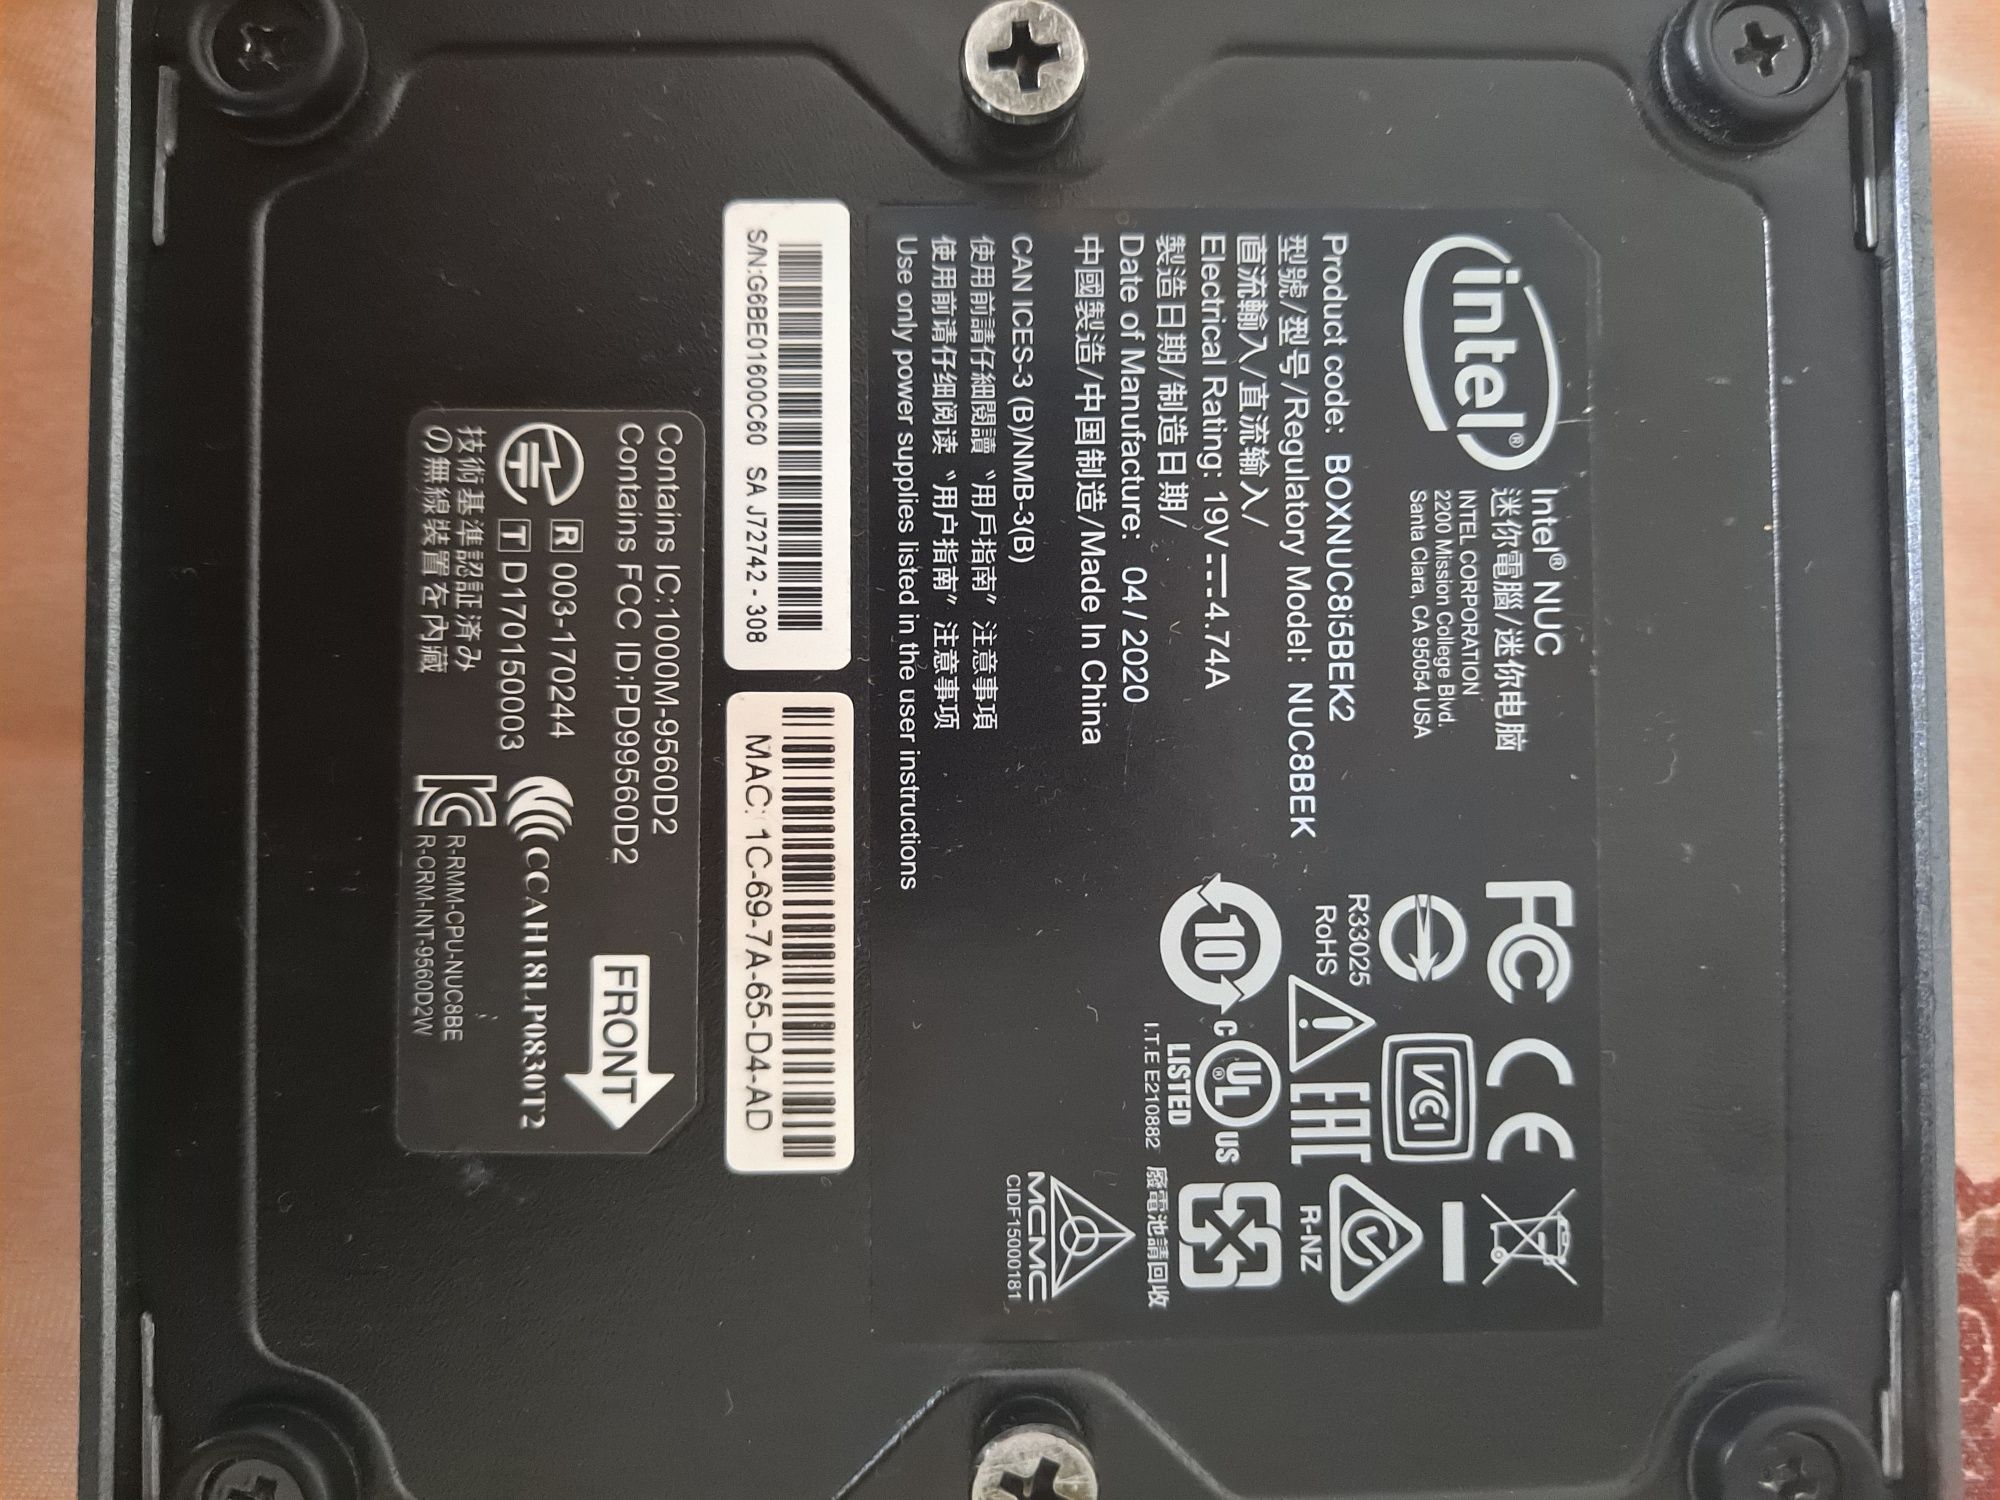 Intel nuc i5 gen8